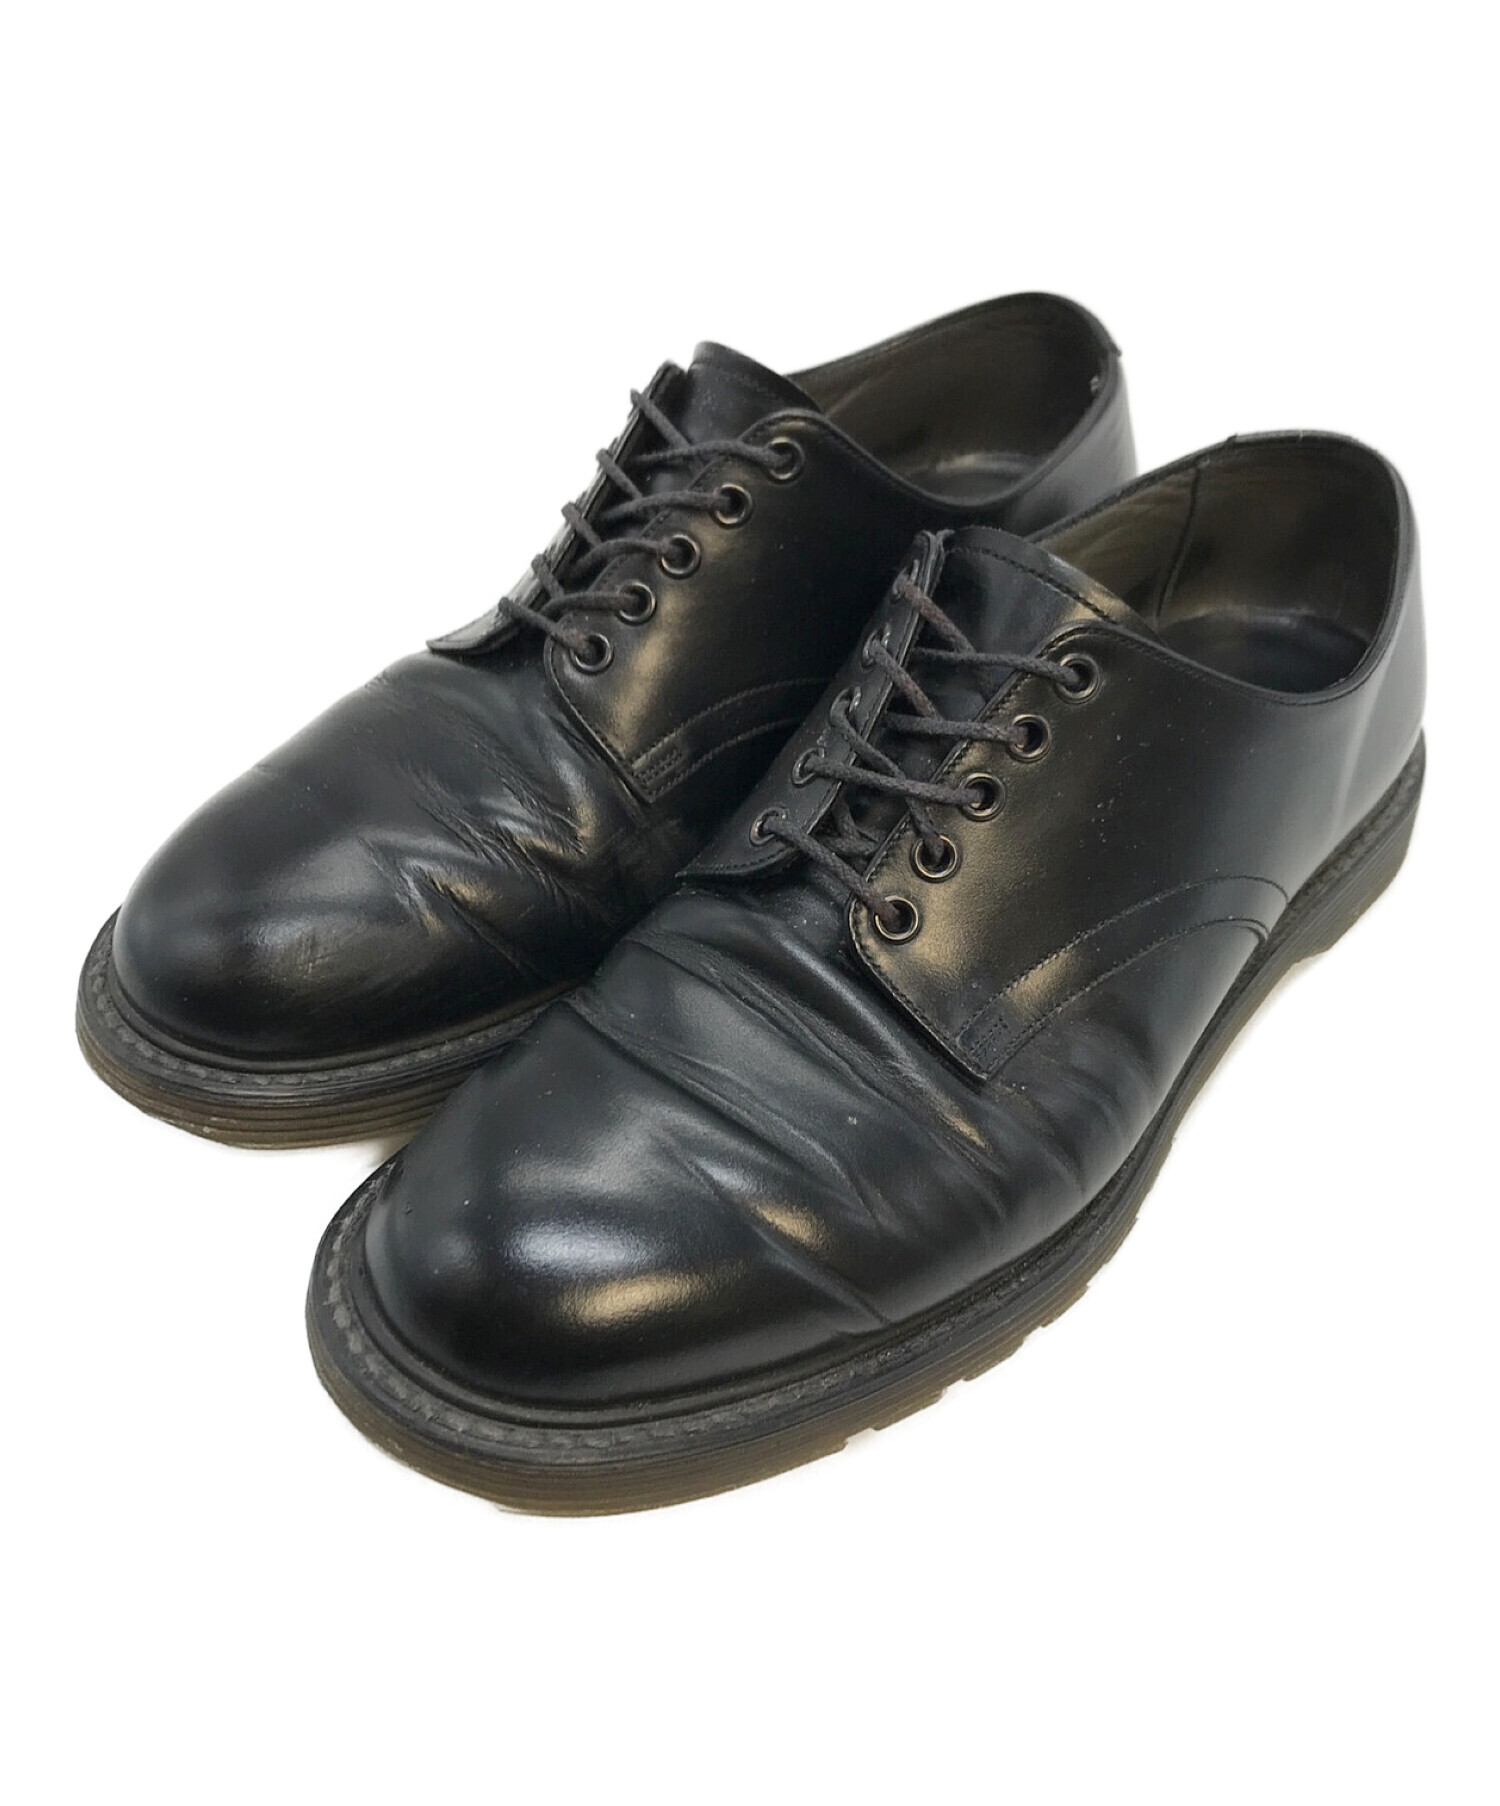 foot the coacher (フットザコーチャー) S.S.SHOES プレーントゥシューズ ブラック サイズ:7 1/2